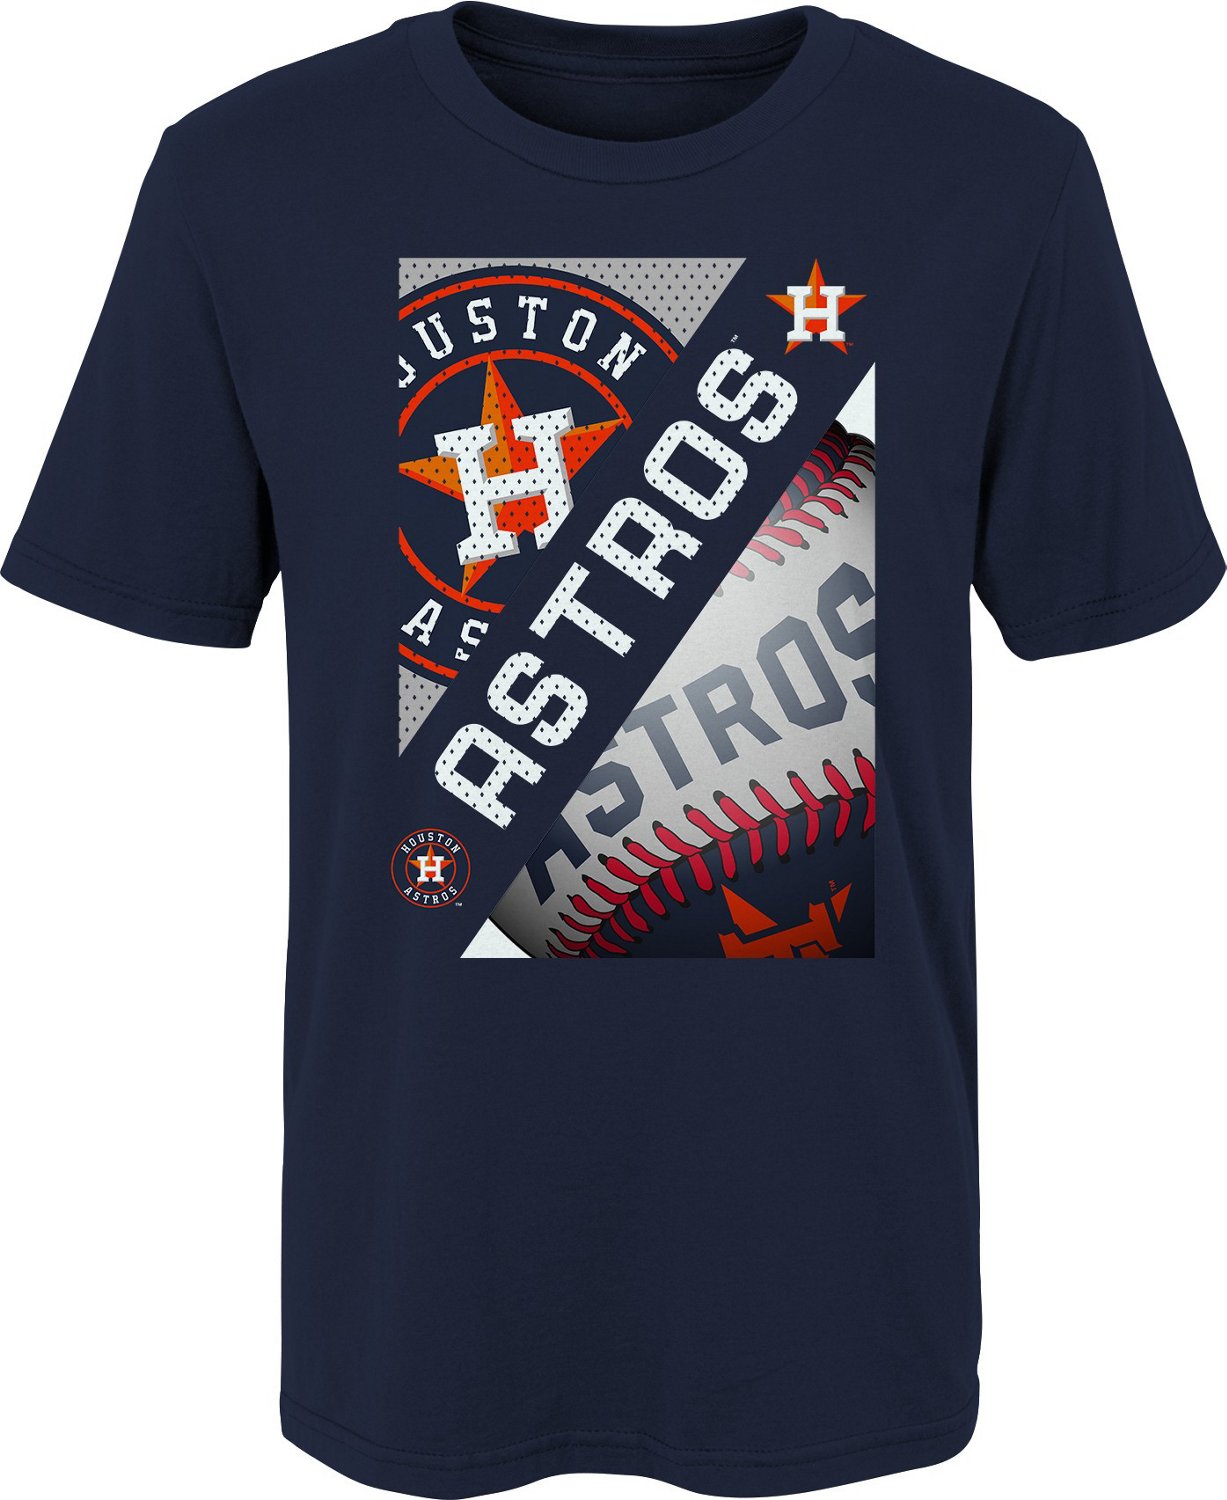  Houston Astros Shirt: Sports & Outdoors